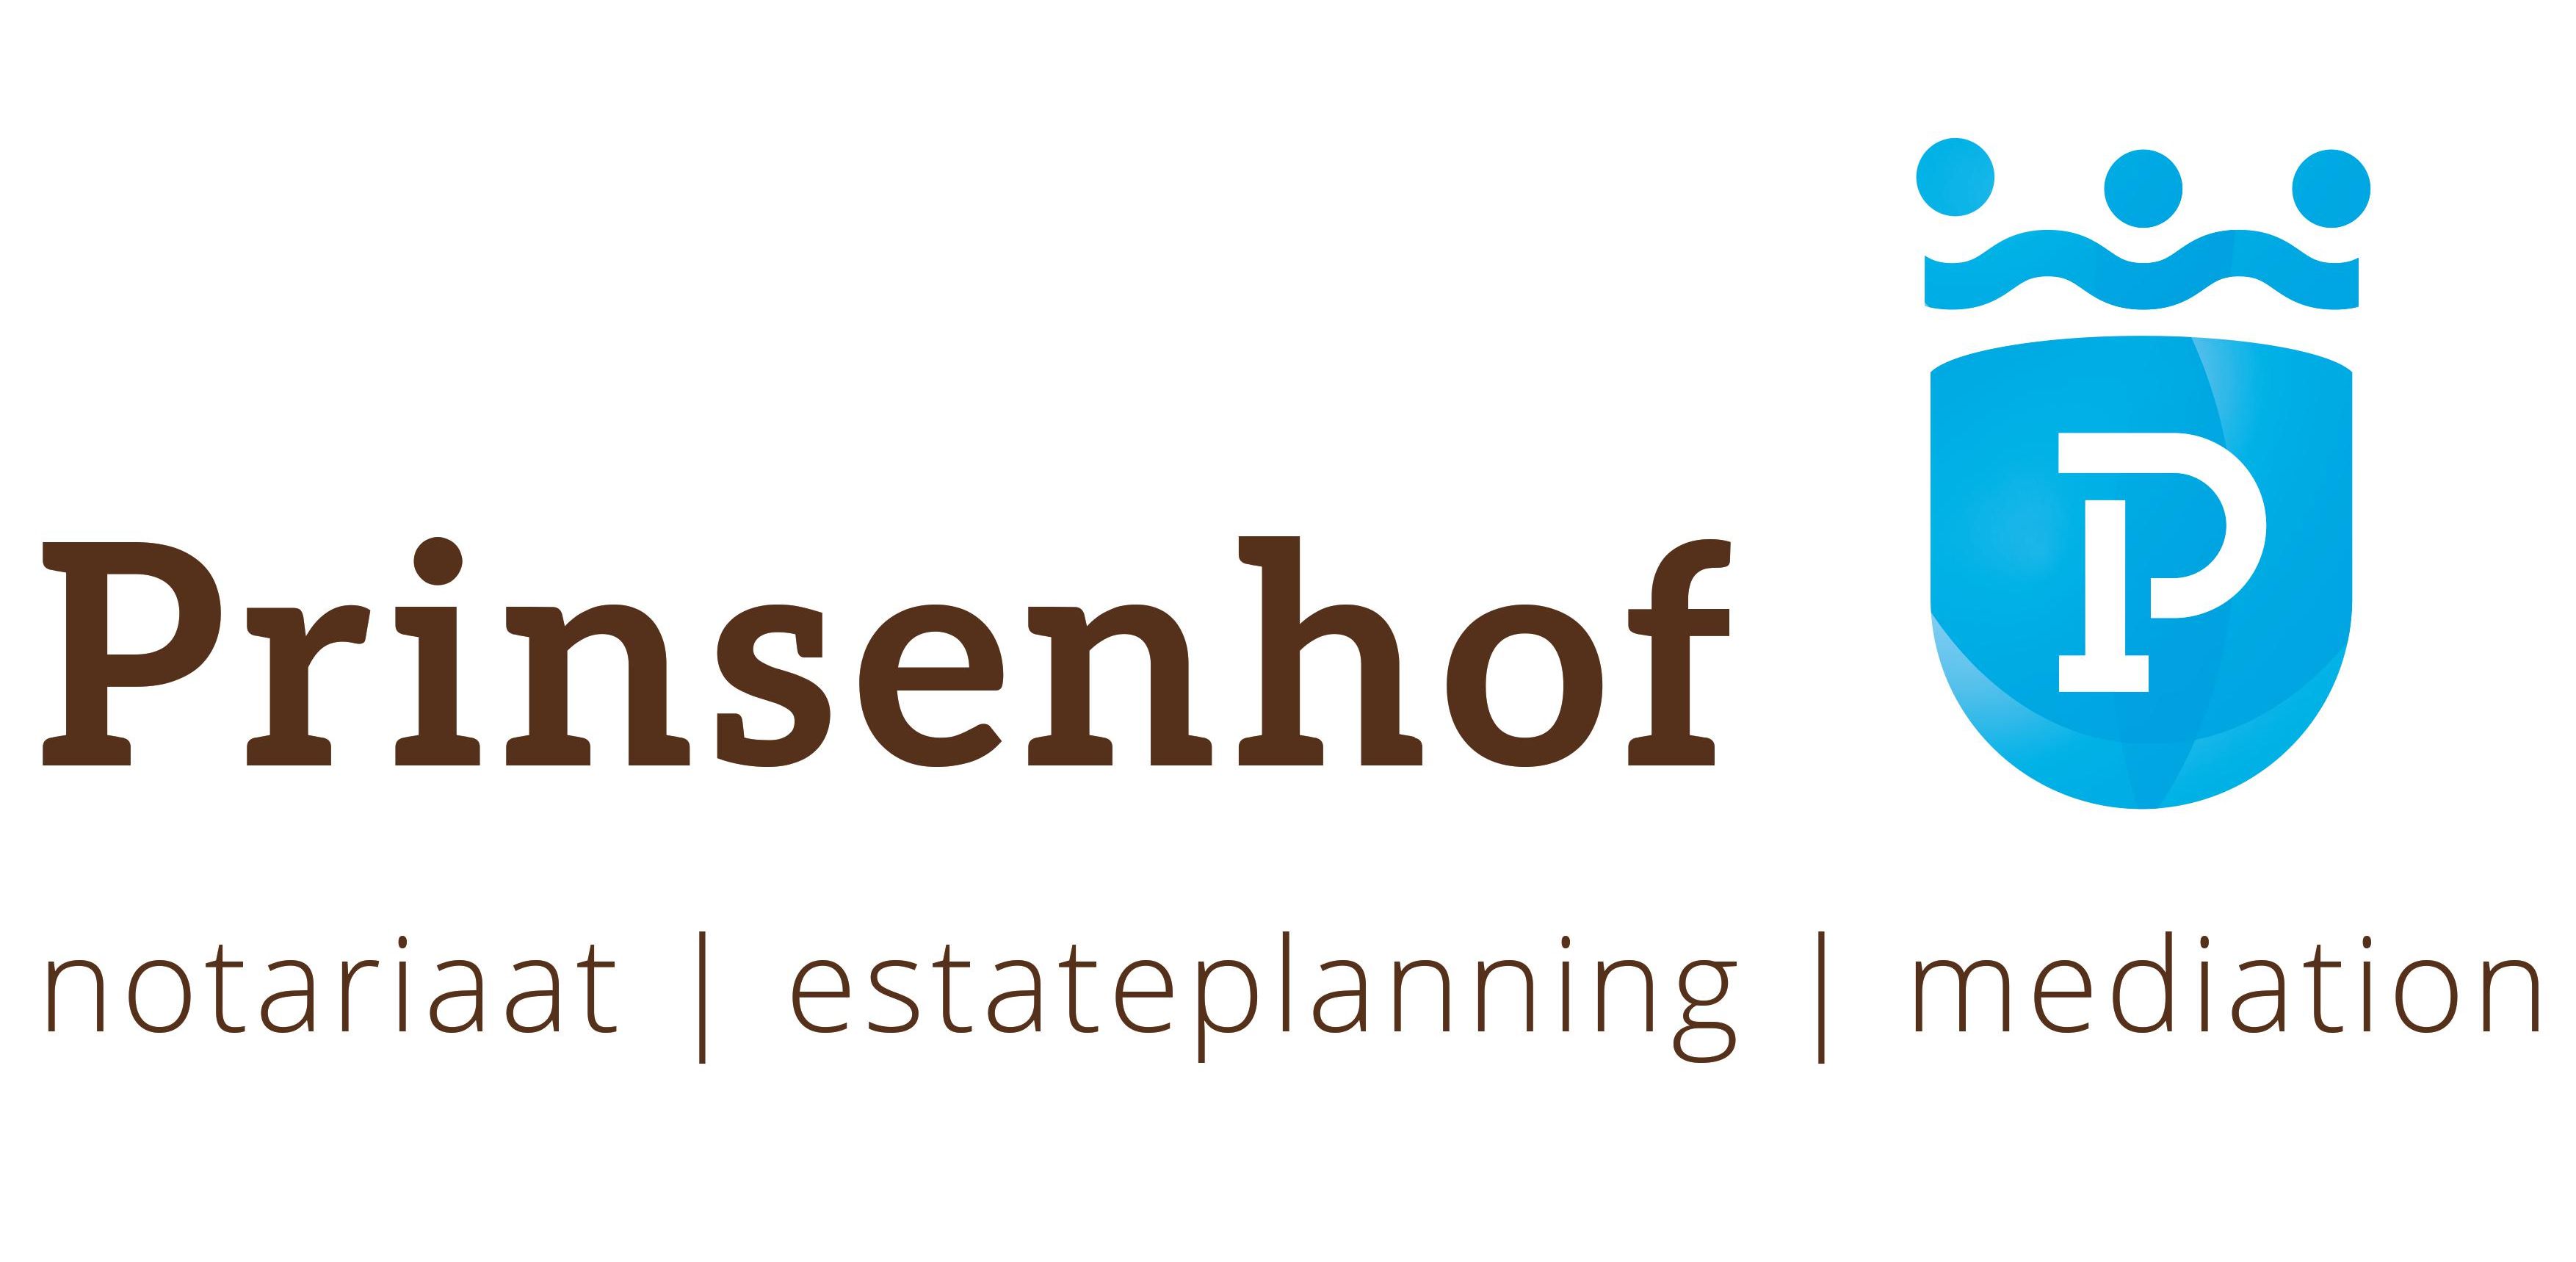 Prinsenhof notariaat & estateplanning-logo